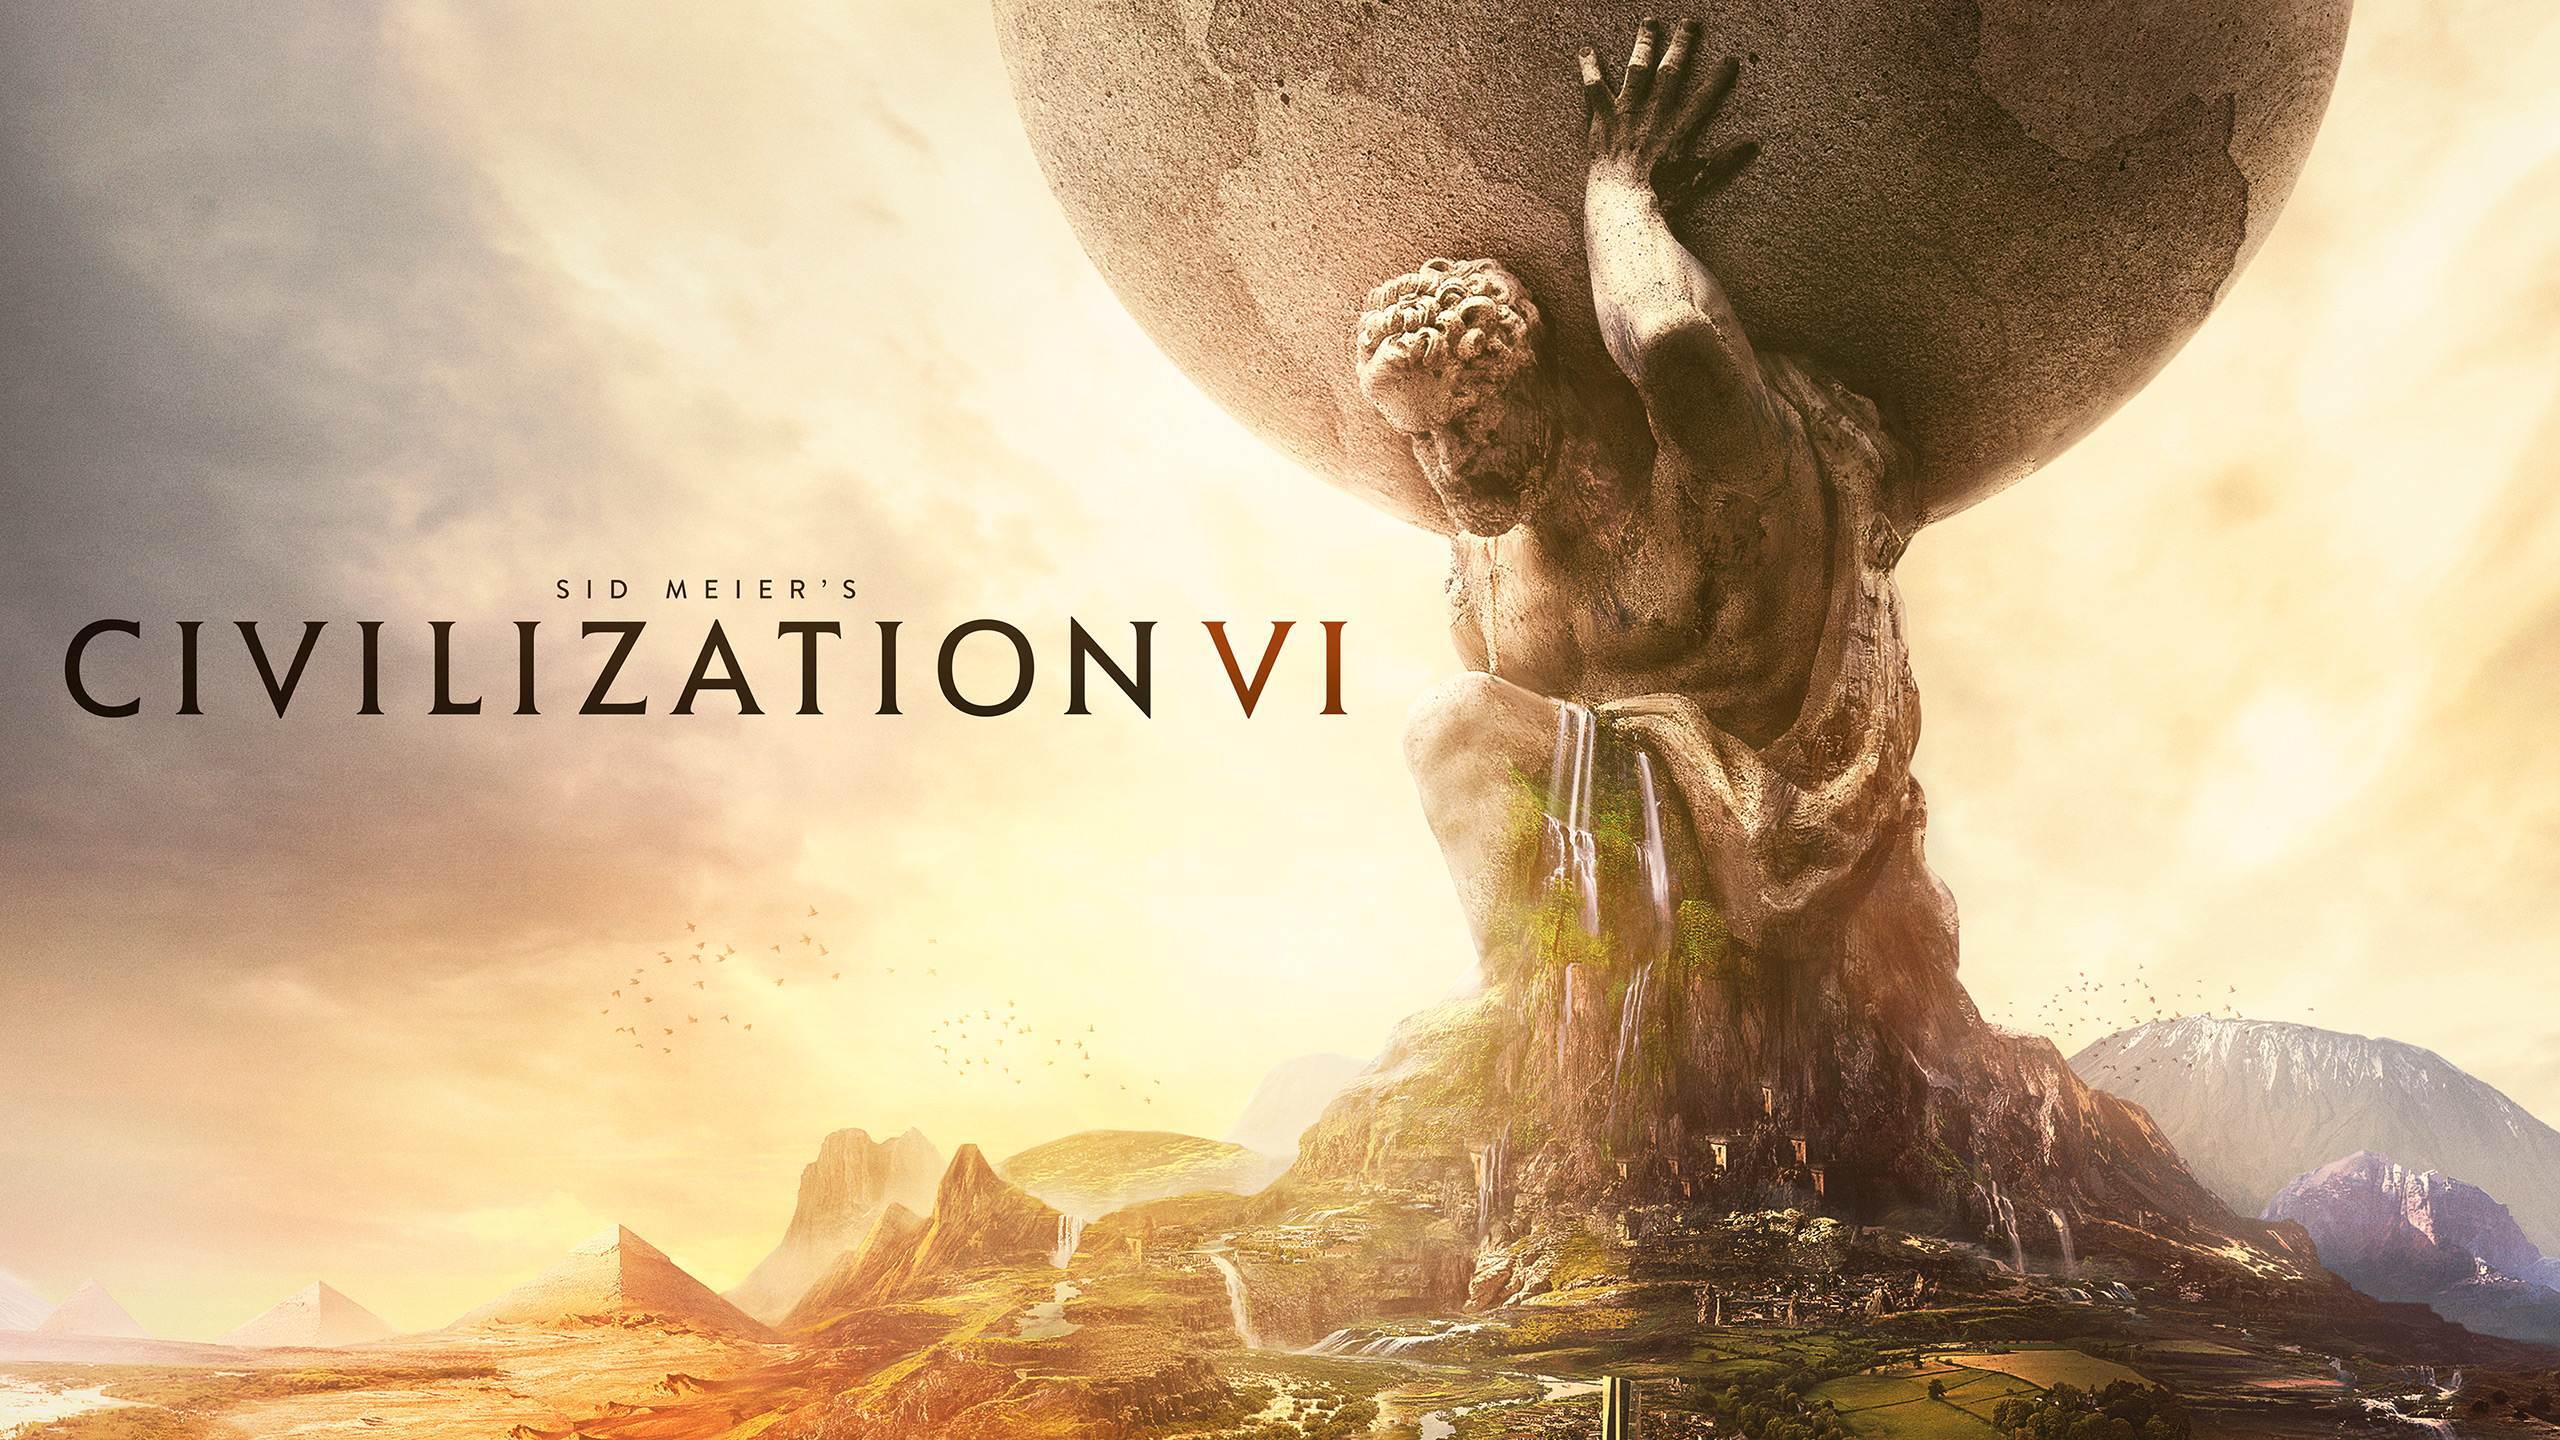   Civilization VI      91%